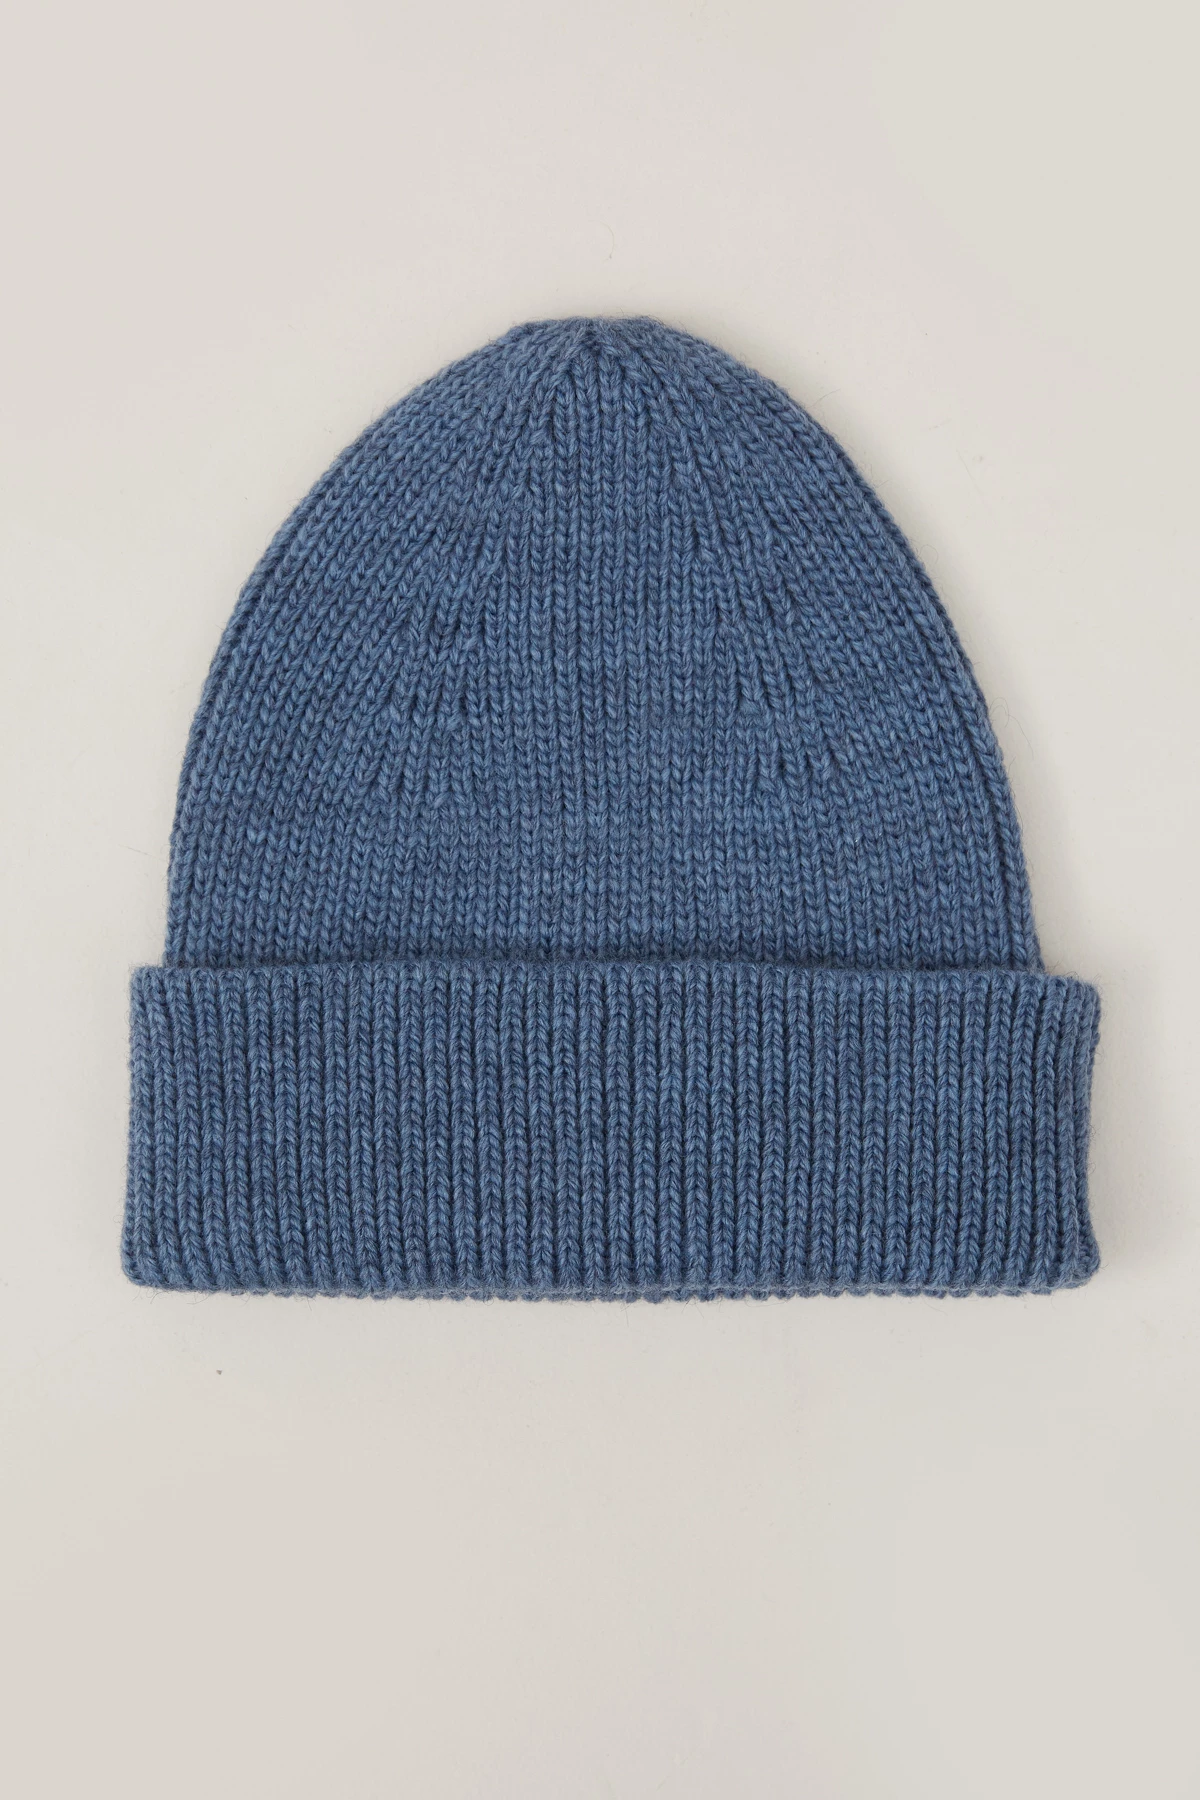 Knitted woolen dark blue beanie hat, photo 2